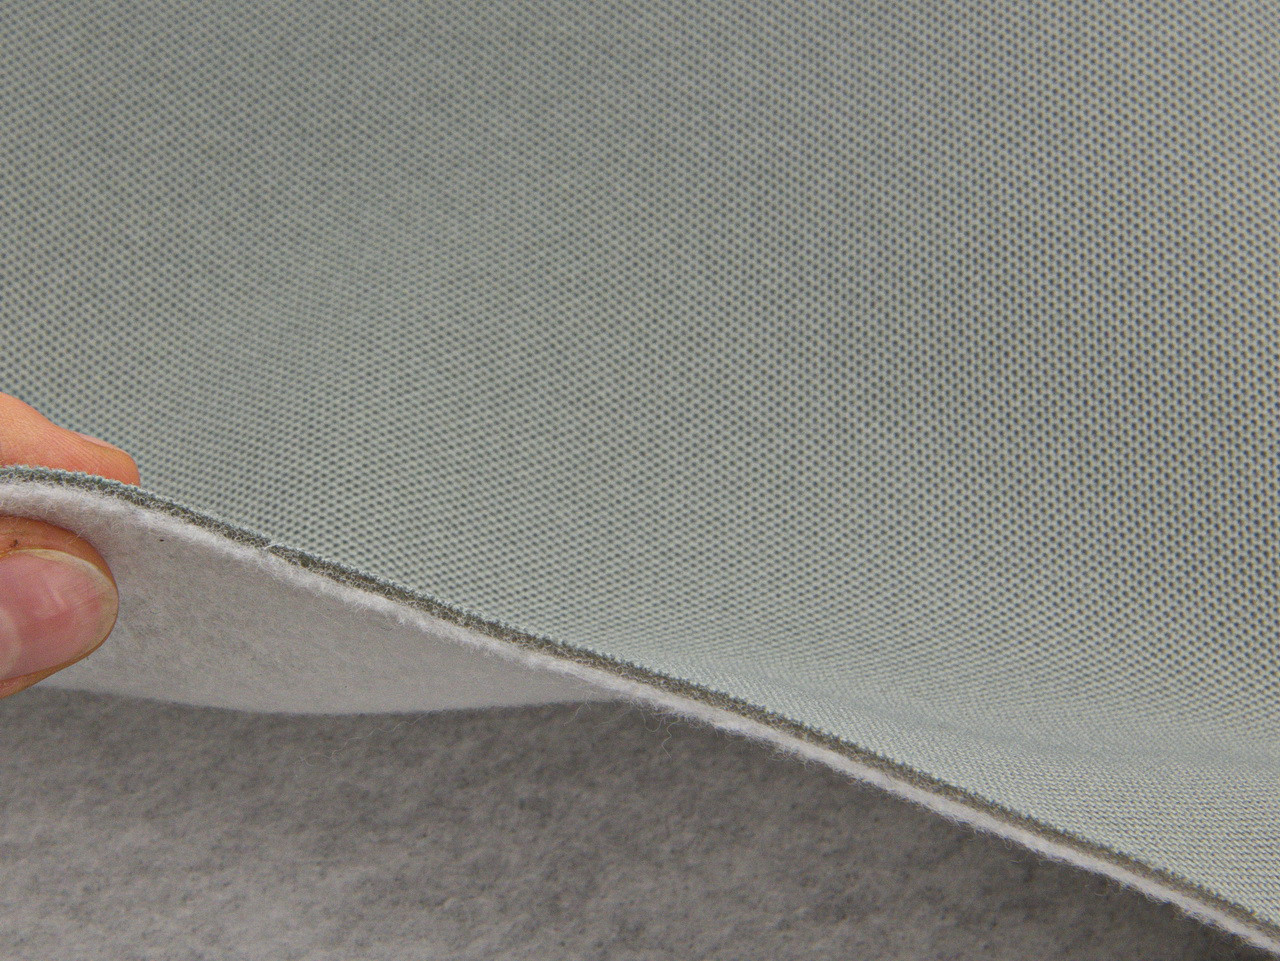 Автоткань потолочная Lacoste L-43 серая (зеленый оттенок) на поролоне и войлоке, толщина 3мм, ширина 165см, Турция детальная фотка